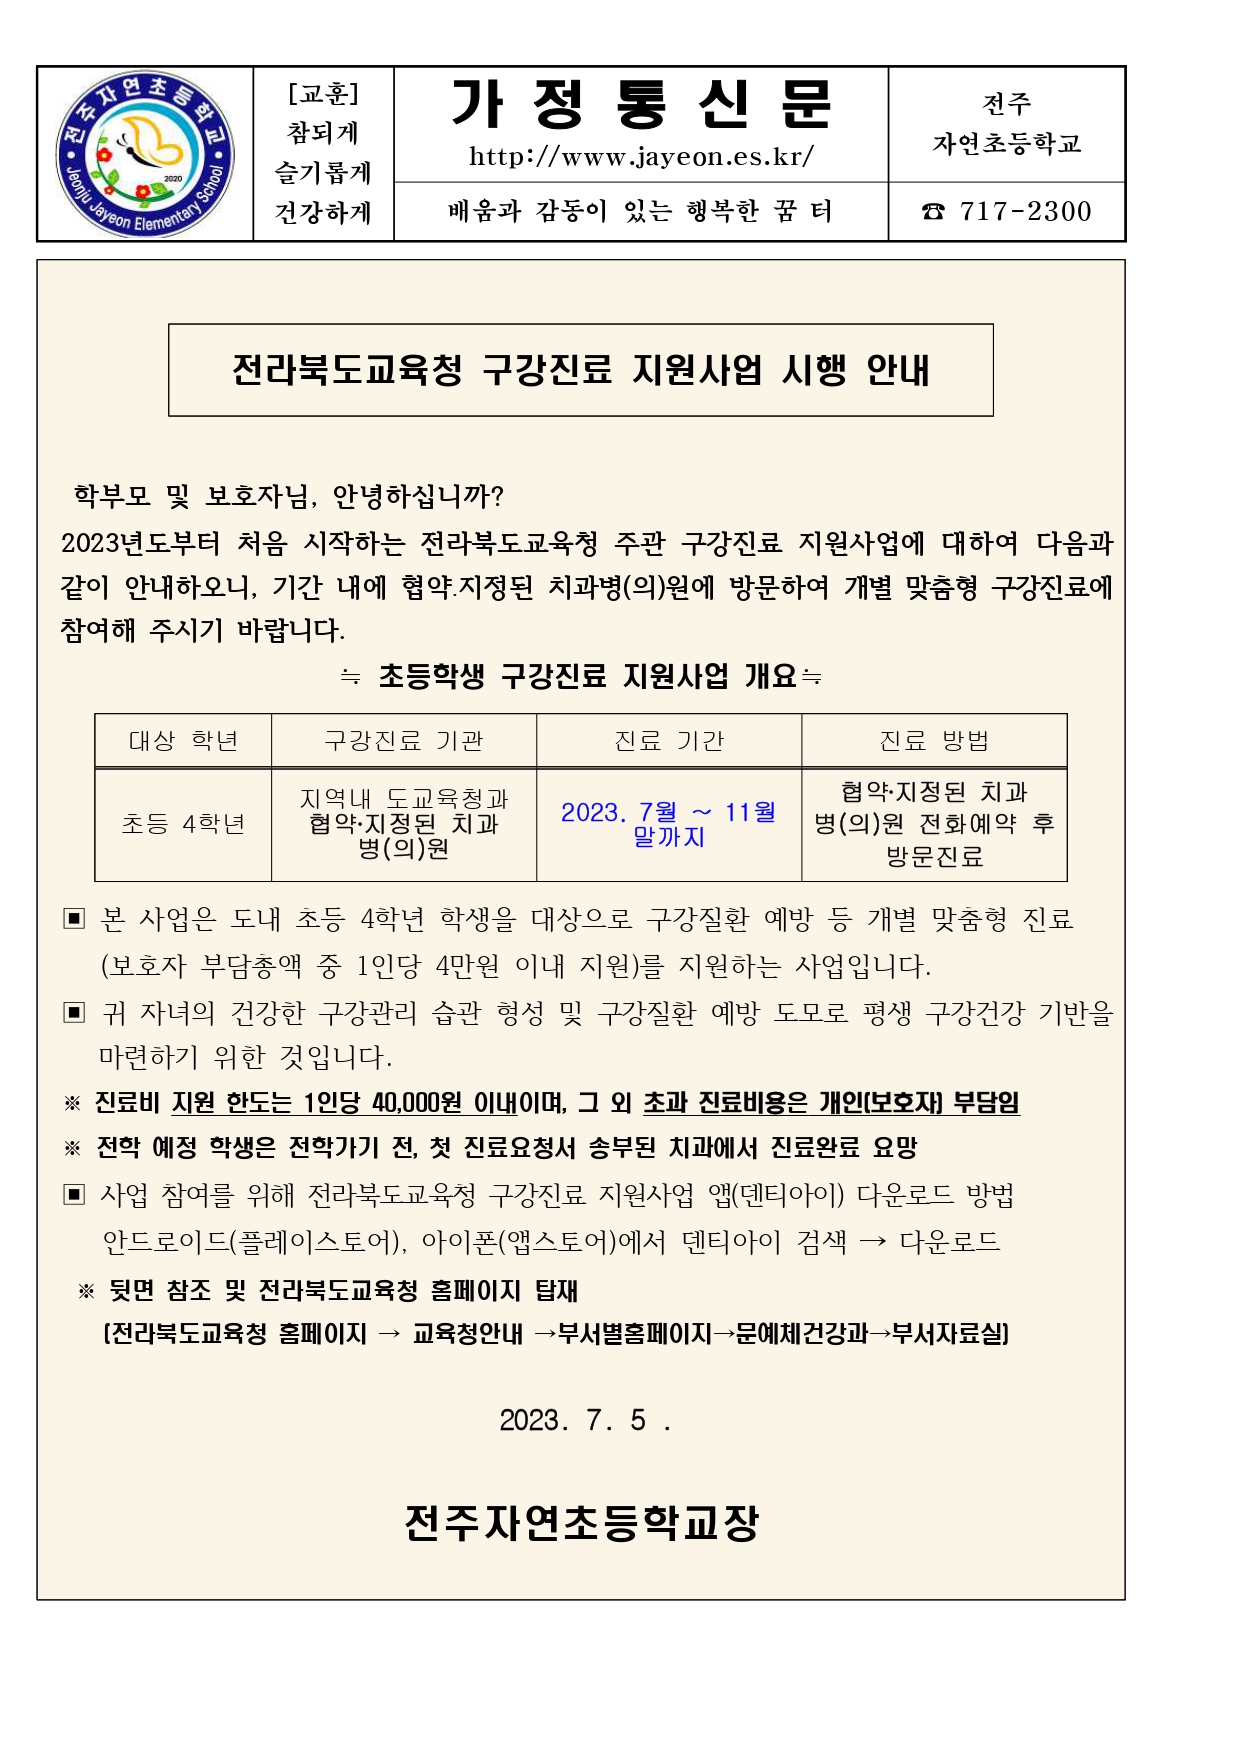 구강건강진료지원사업 안내문_page-0001